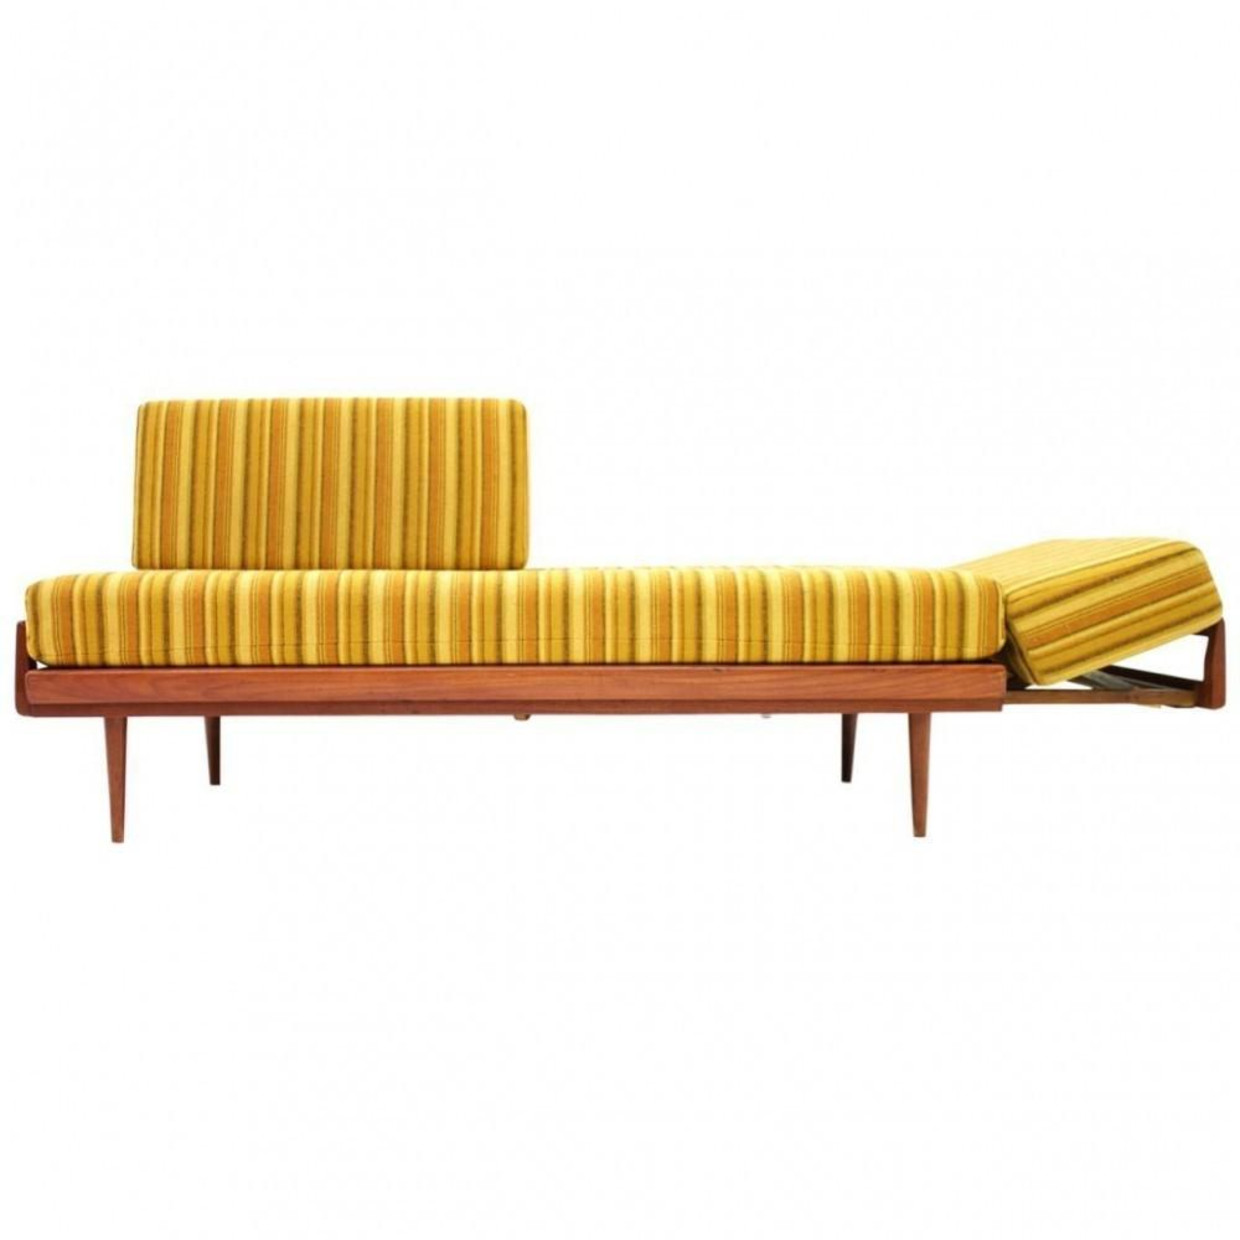 Teak Wood Sofa & Daybed van knoll Antimott, Duitsland 1950. Beeld VNTG.COM